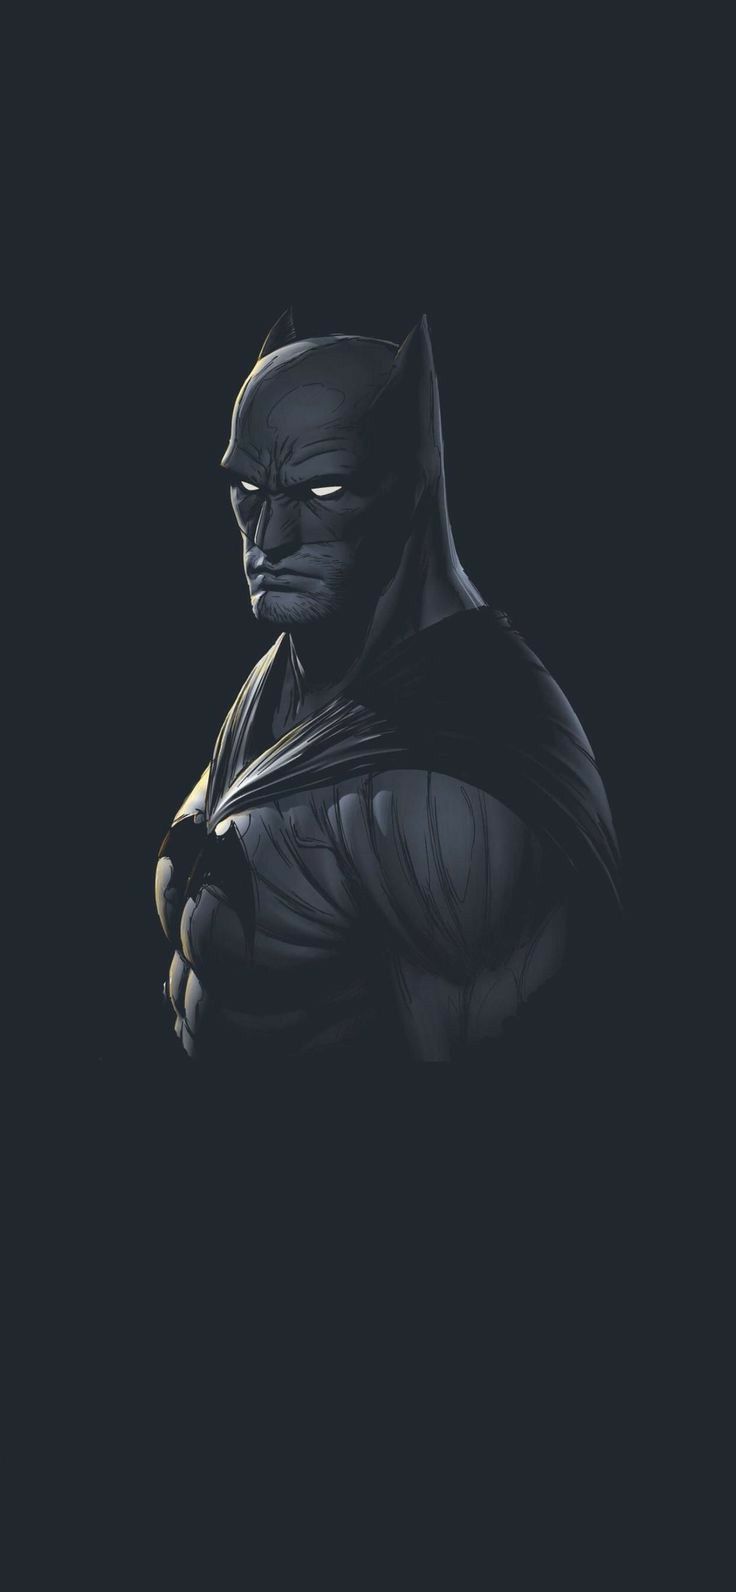 Batman, Minimalist, 4K,3840x2160, Wallpaper  Fondos de pantalla batman, Batman  wallpaper, Fondo de batman para iphone